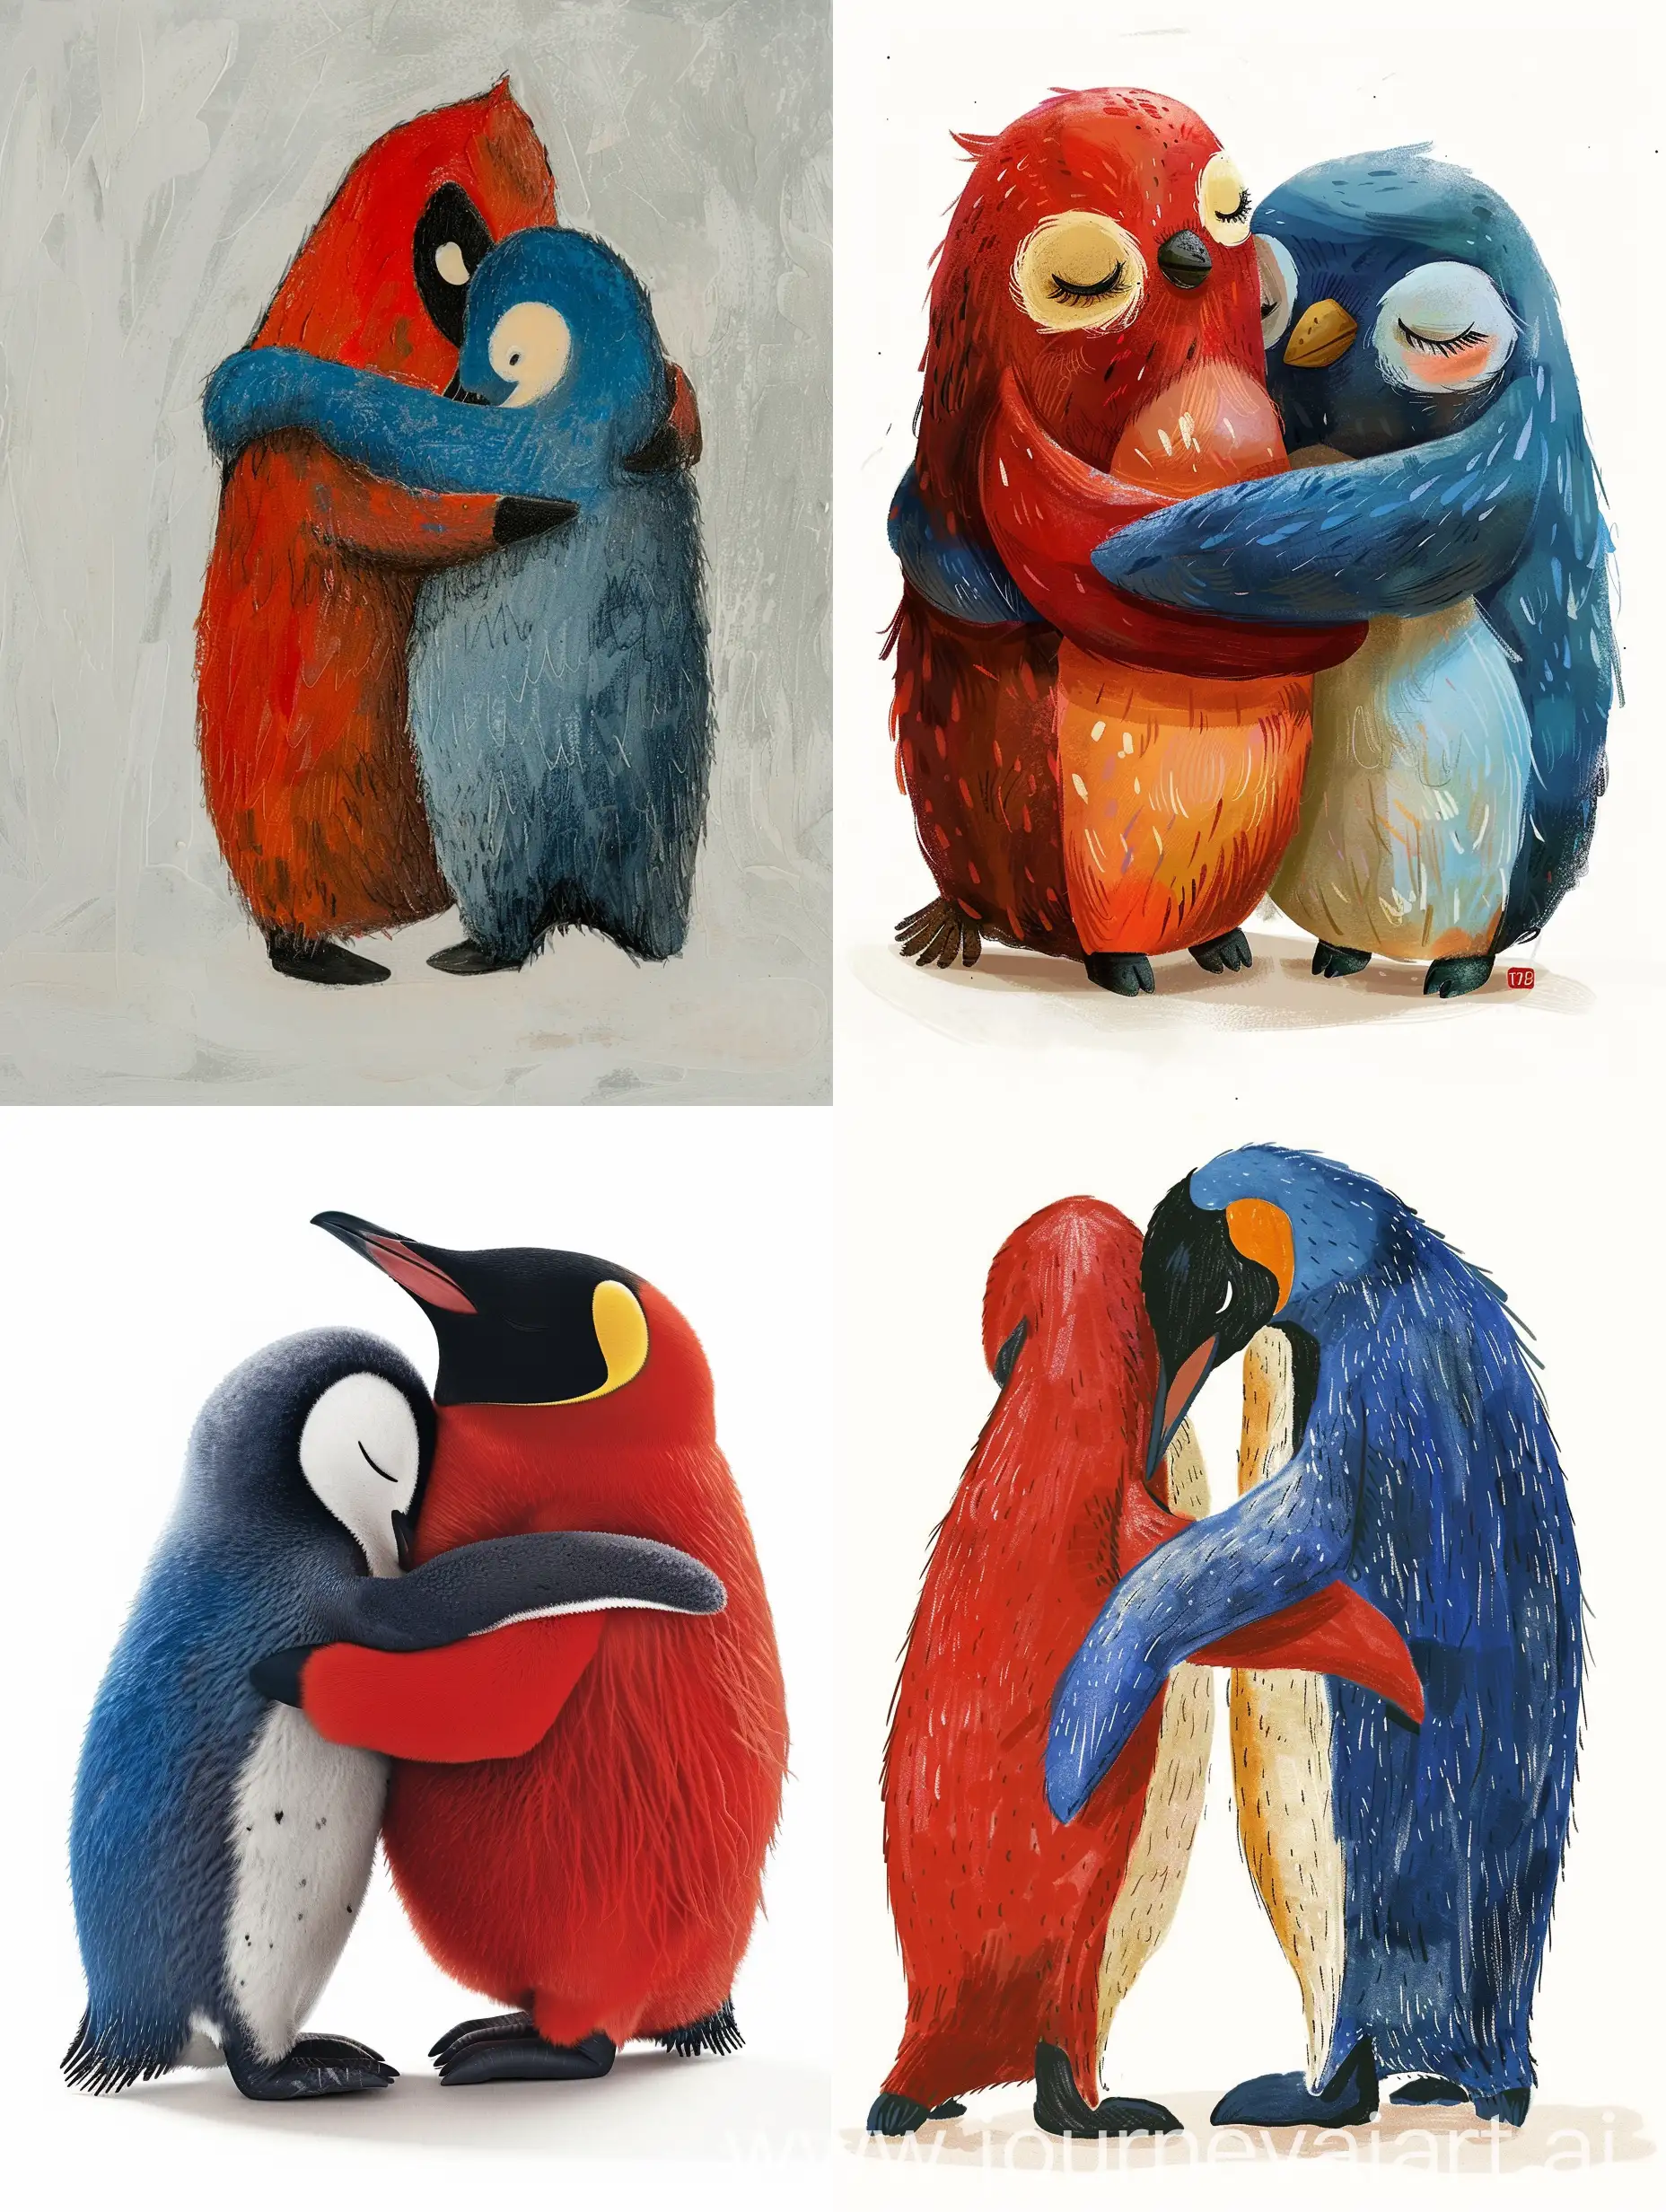 pinguino rojo con un pinguino azul abrazados